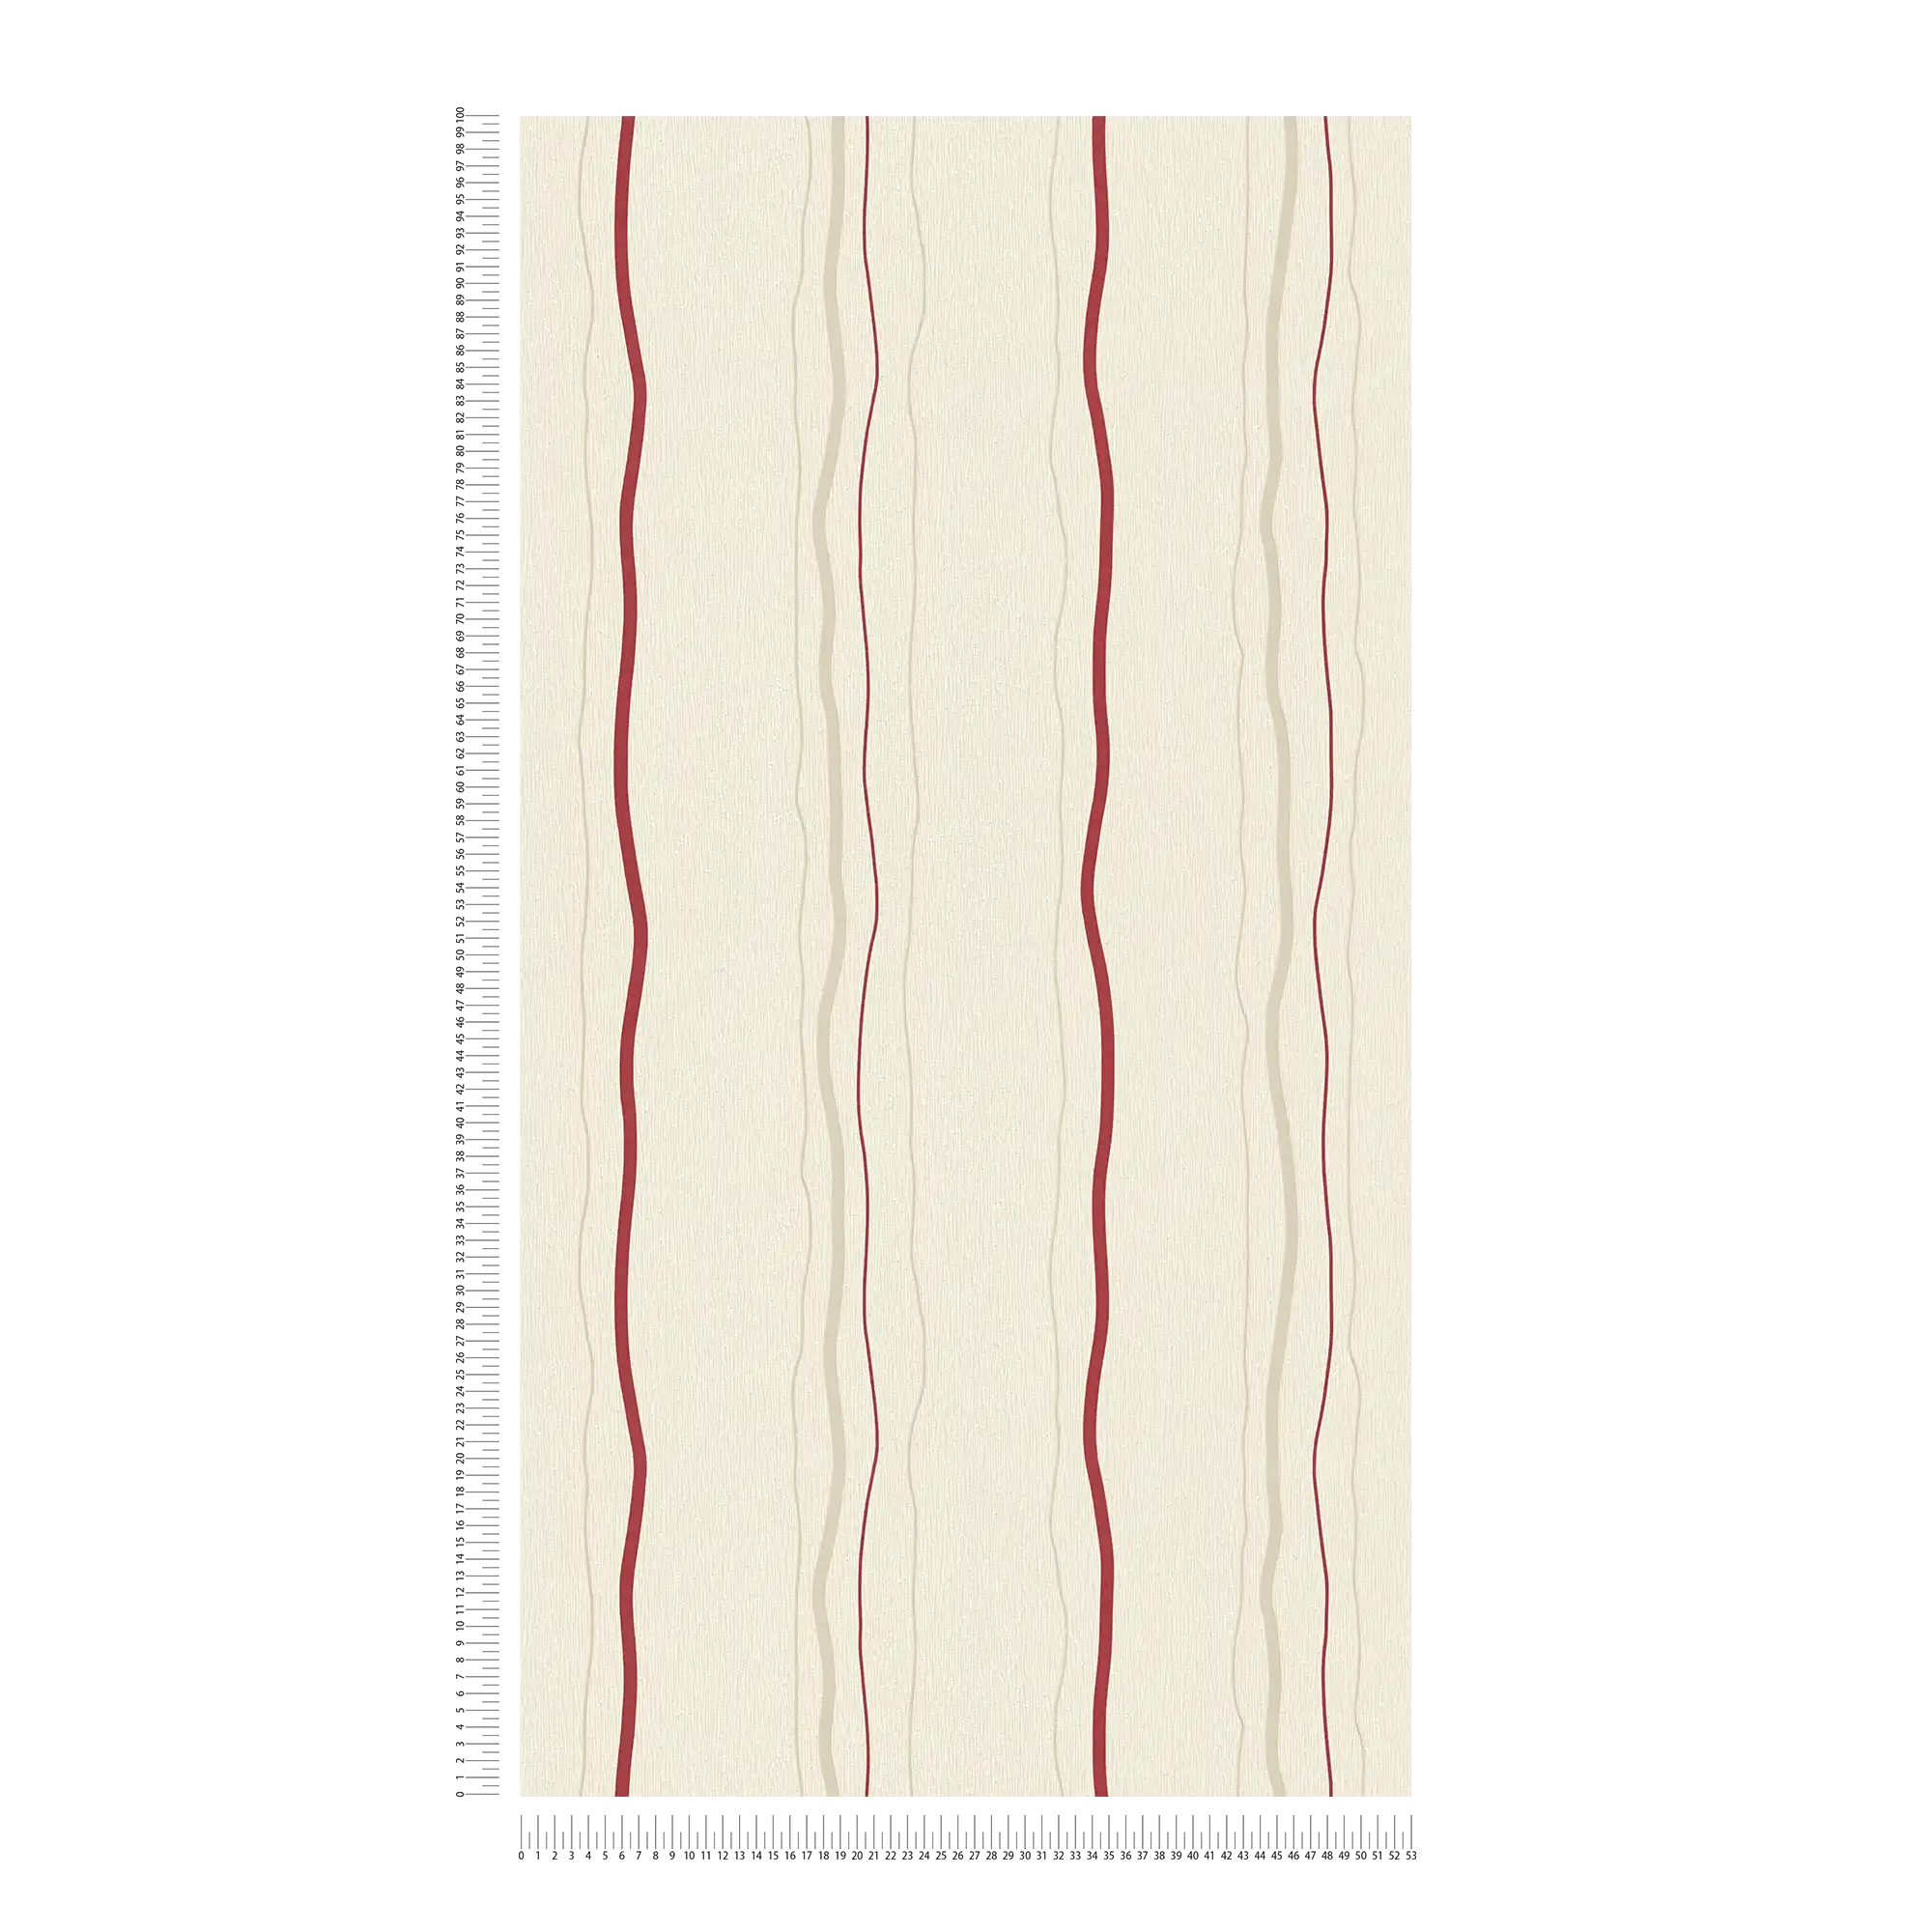             Tapete mit Linienmuster vertikal gestreift – Creme, Rot, Beige
        